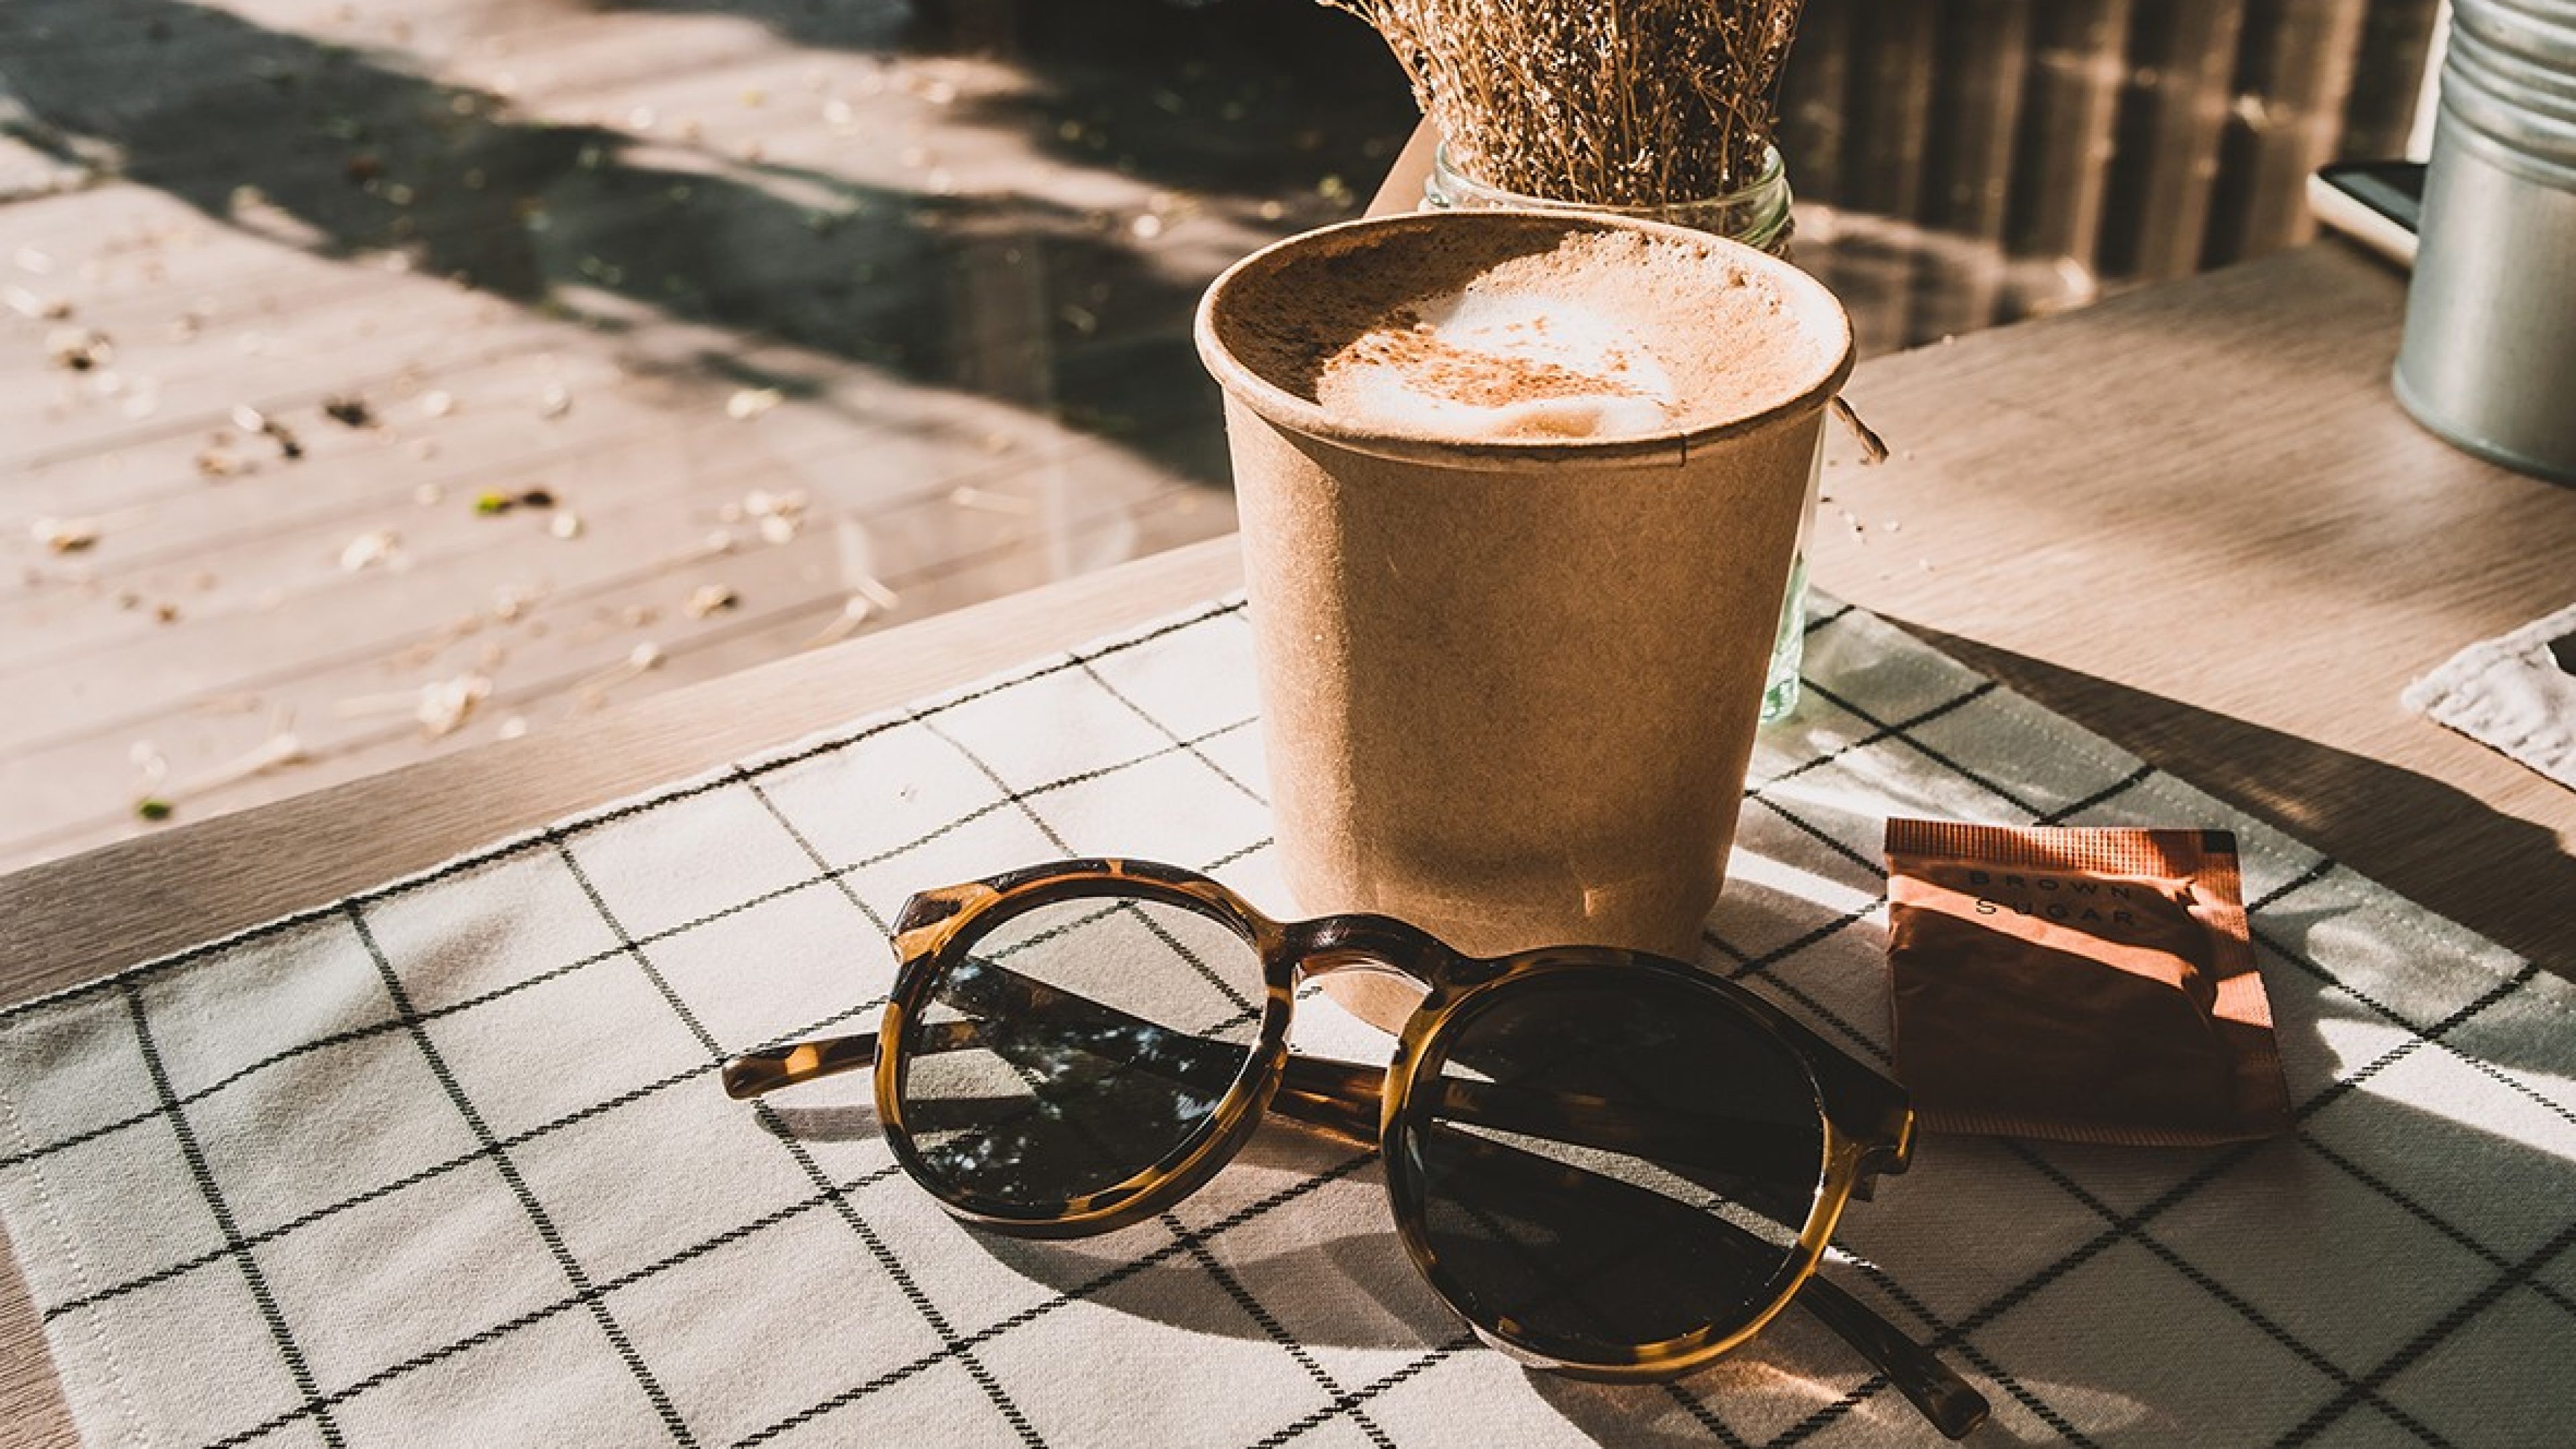 Les lunettes de soleil sont posées sur la table à côté d'un cappuccino. 